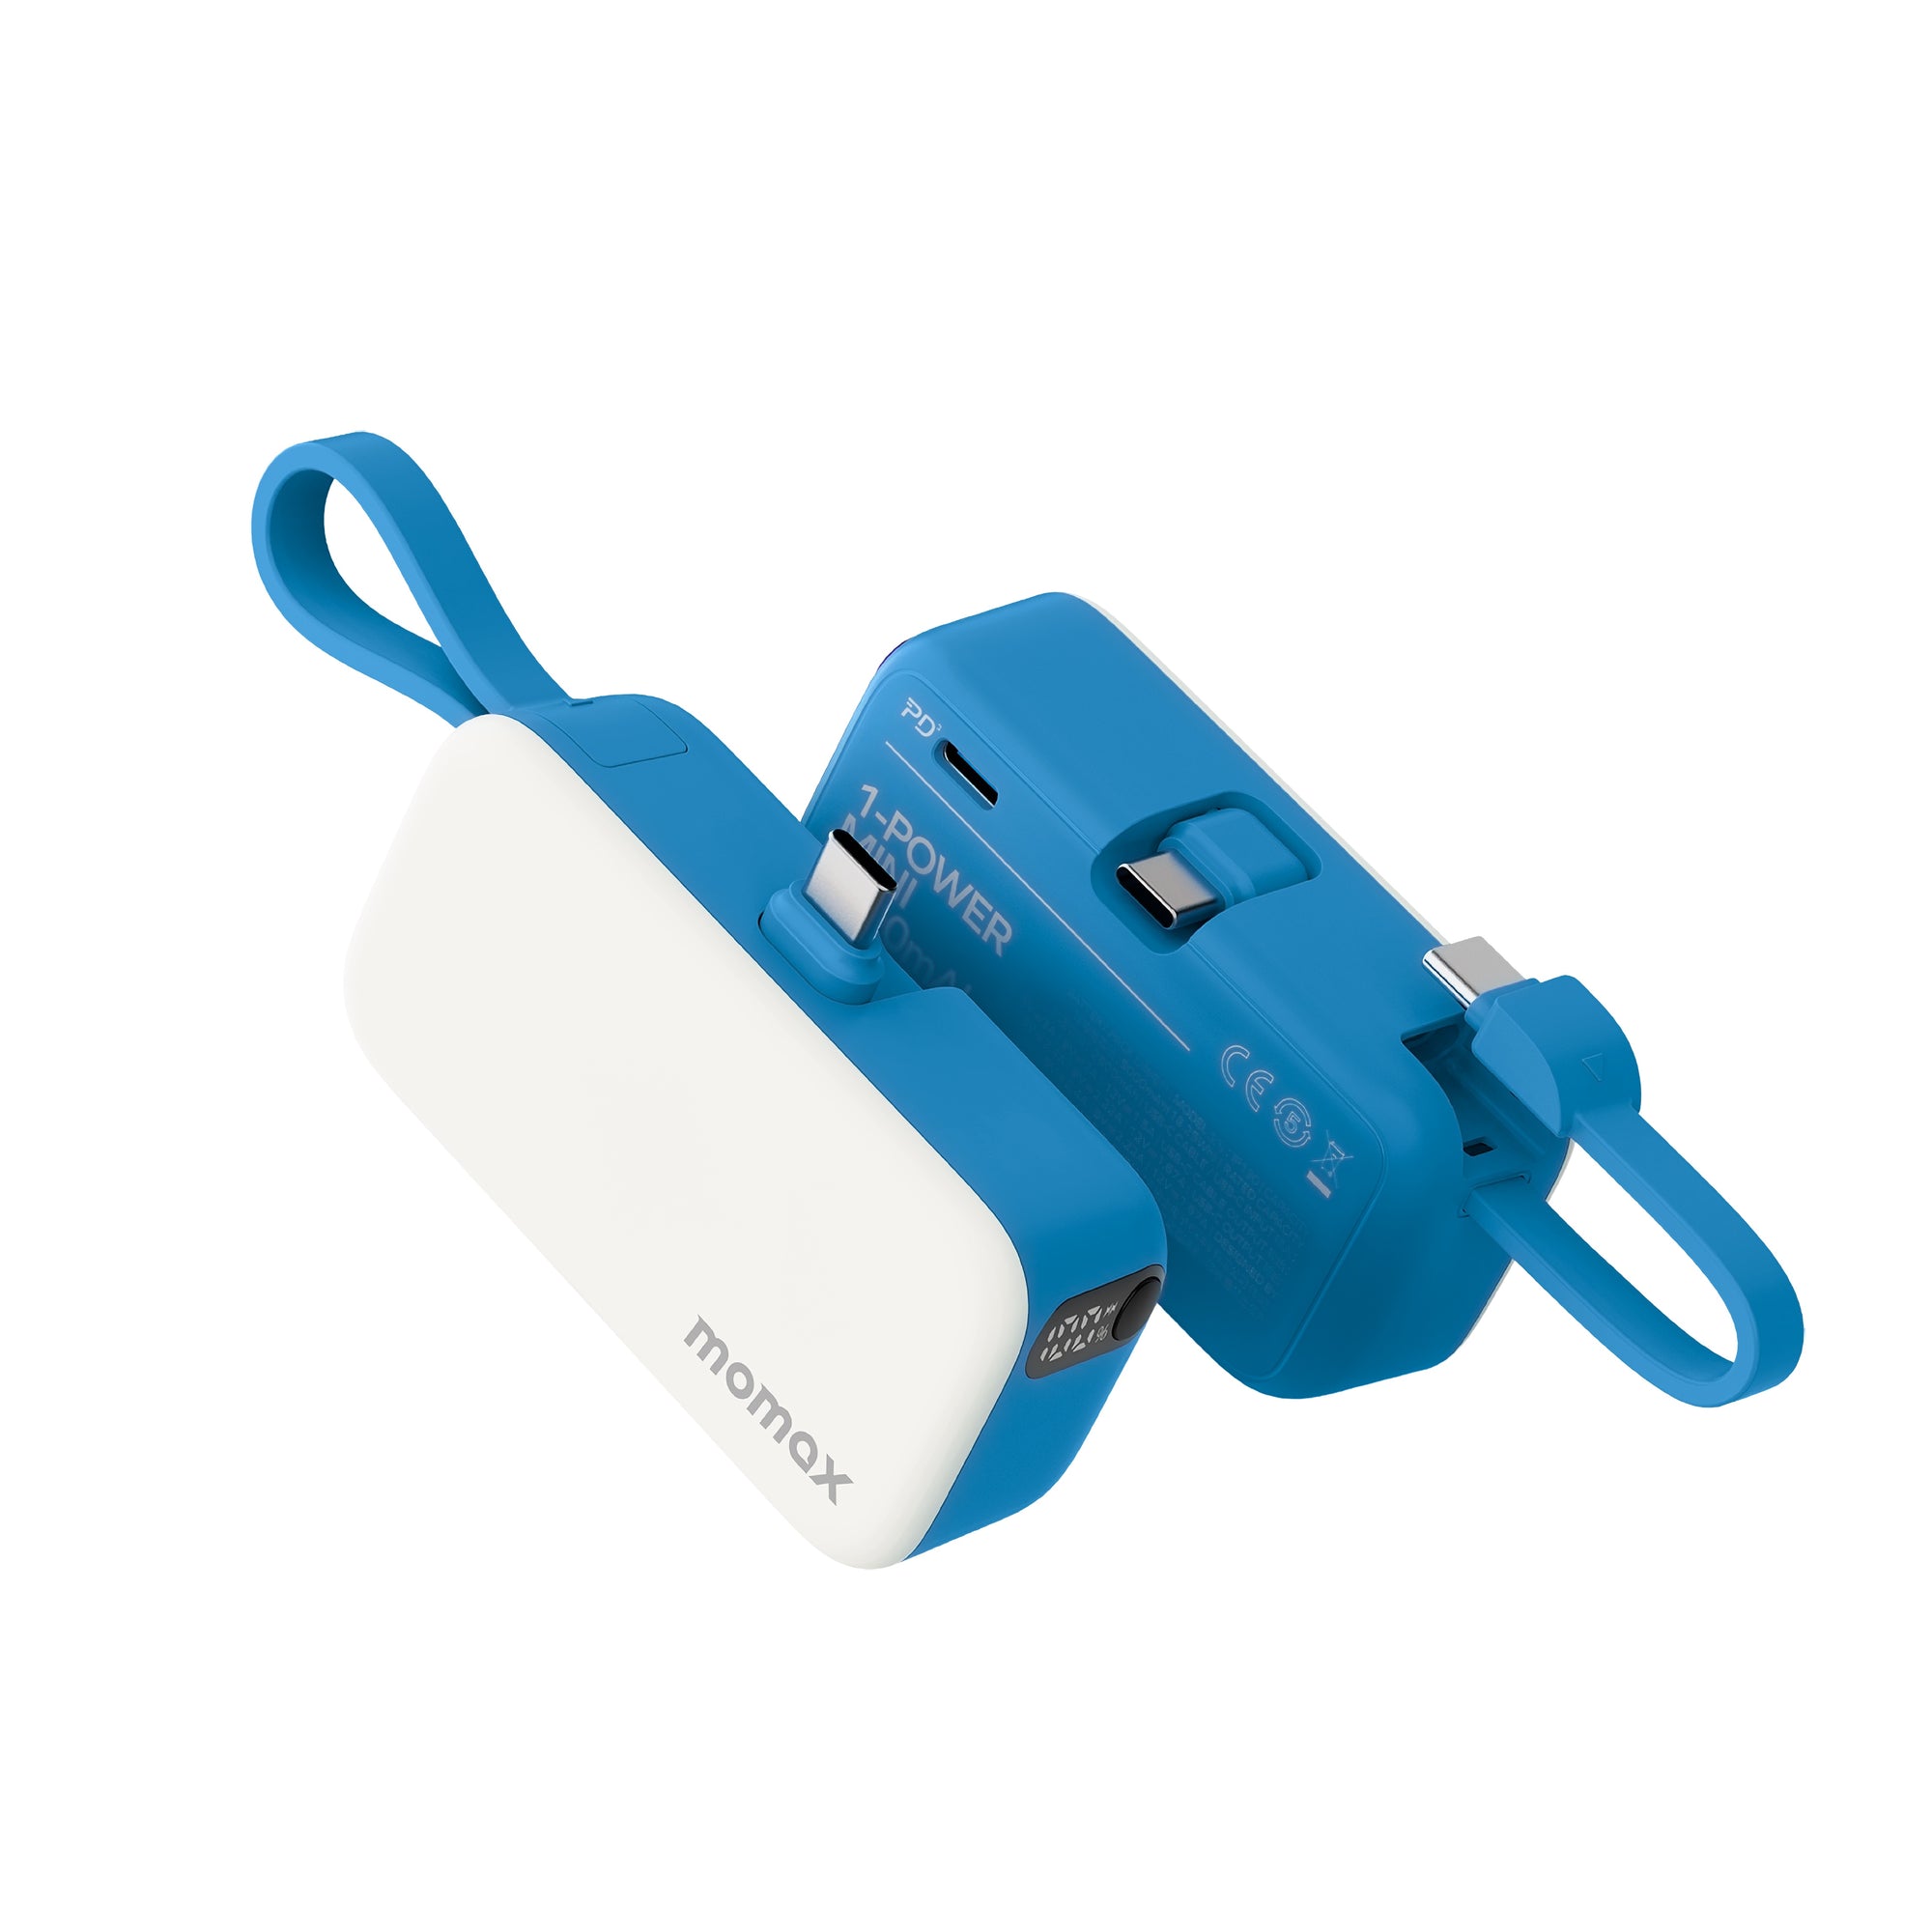 Momax 1-Power Mini Battery Pack, Blue